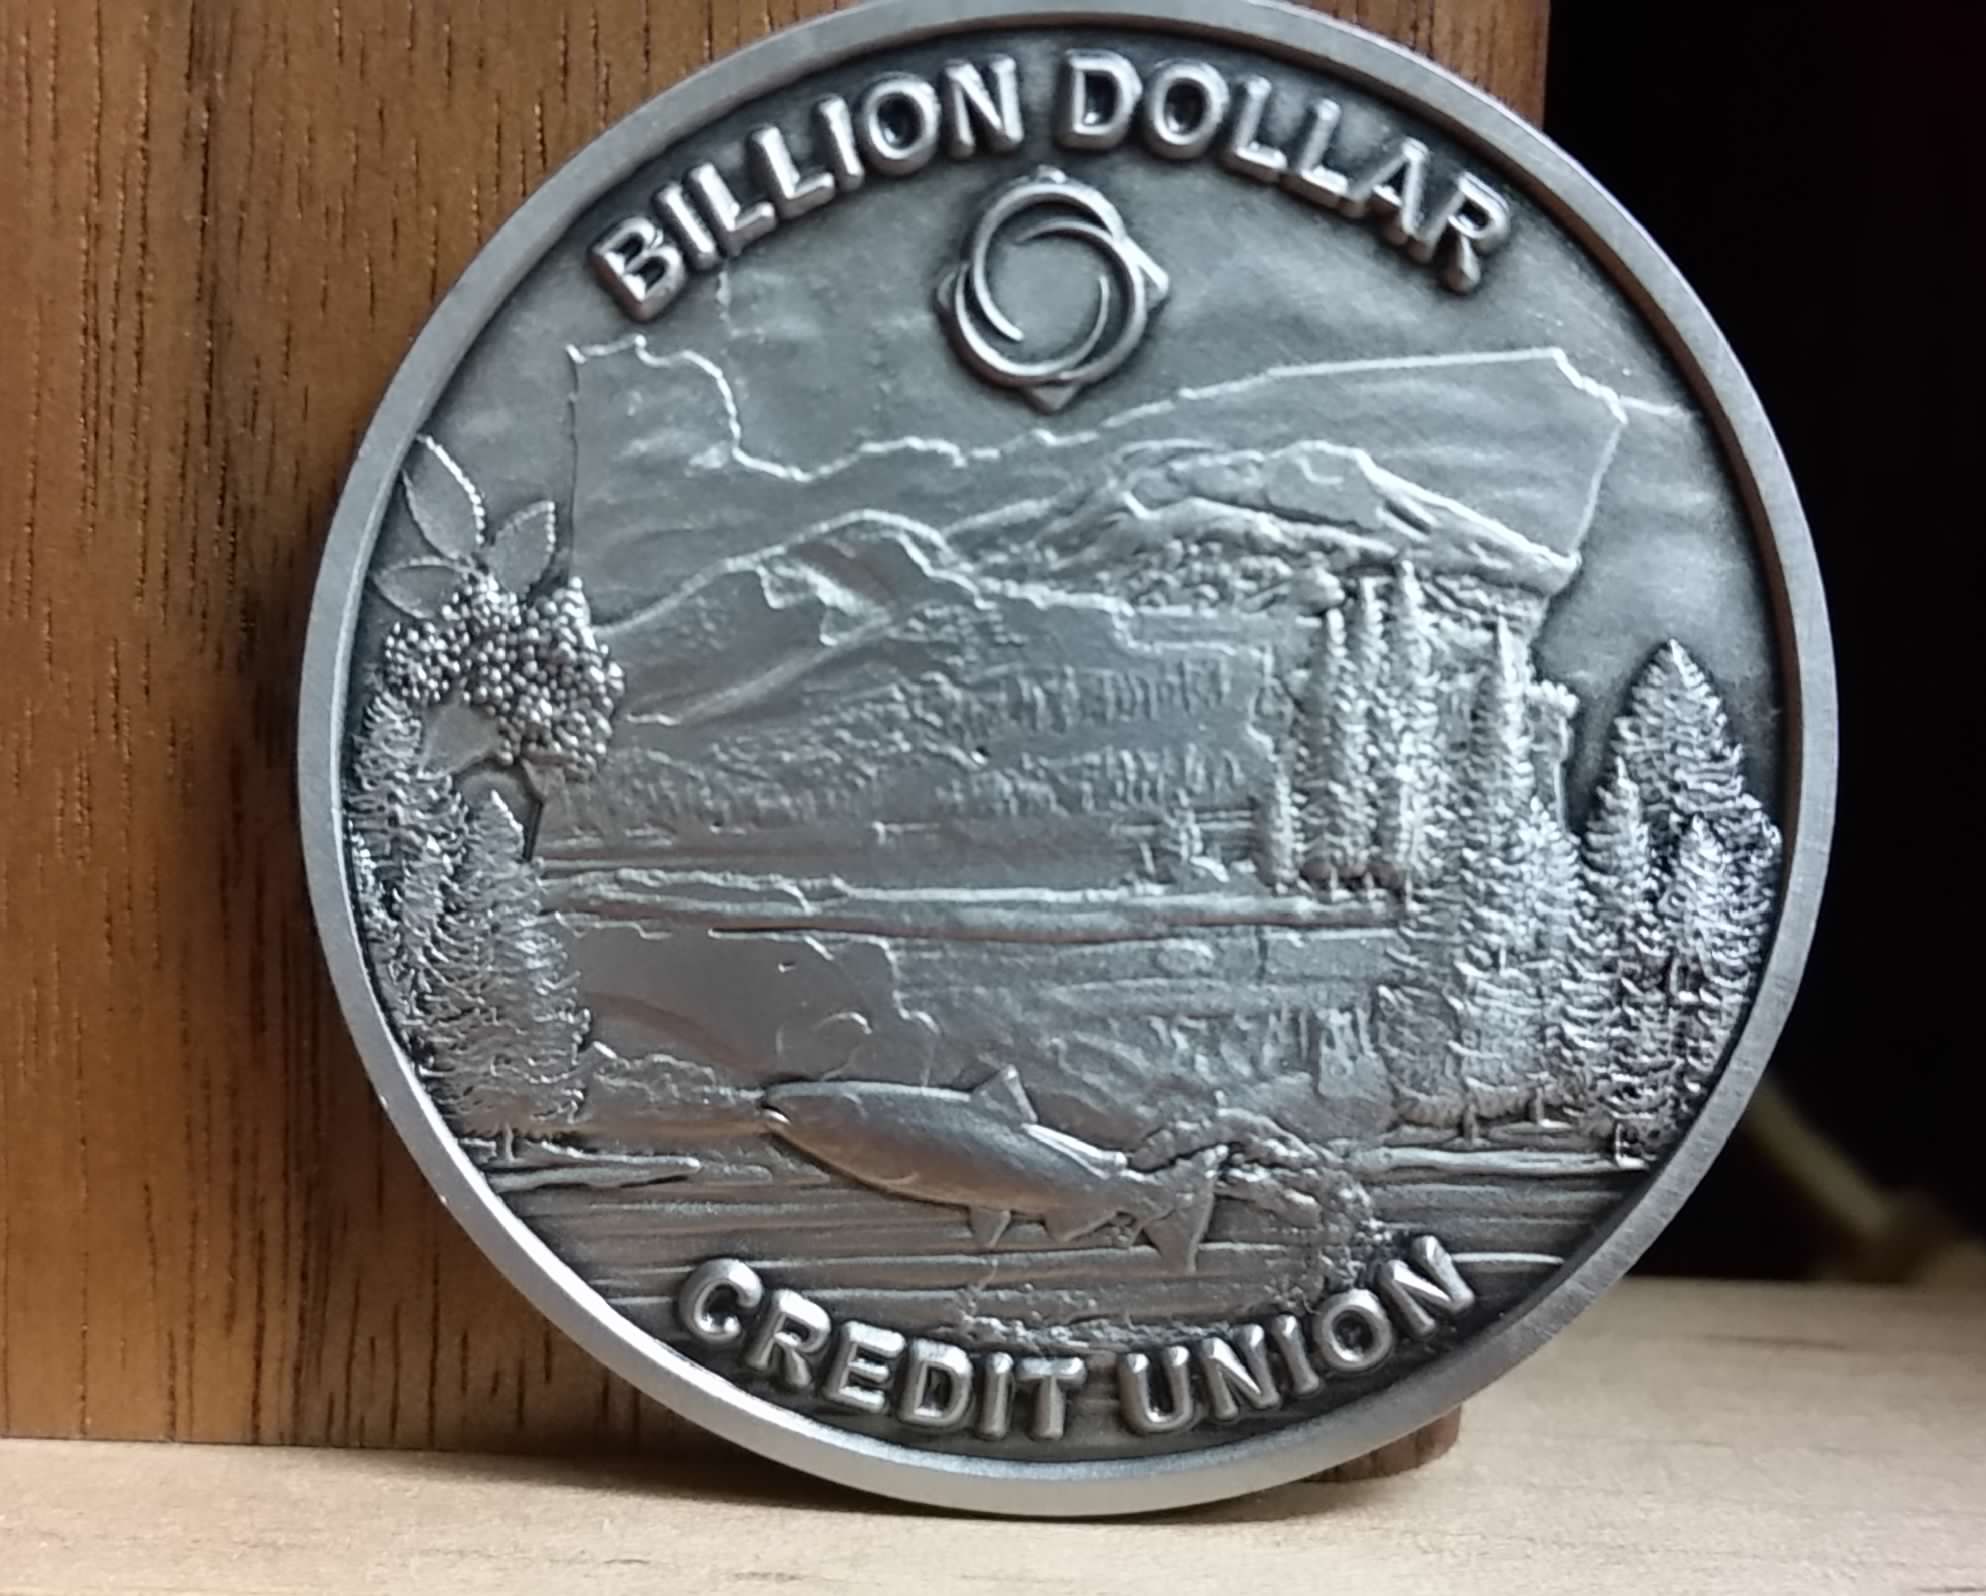 Commemorative coin Oregon State Credit Union